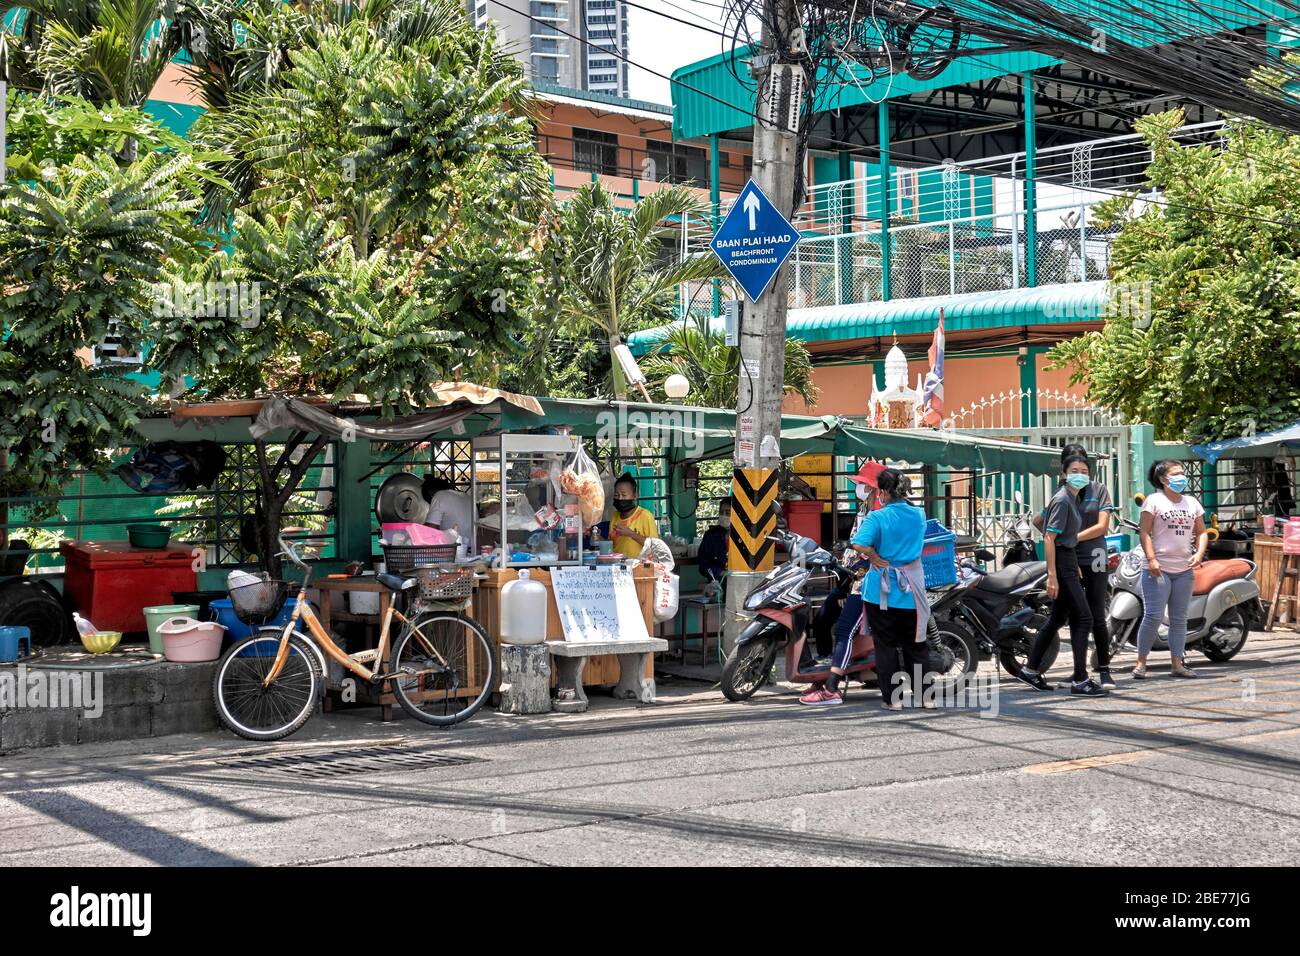 Masques de visage. COVID-19 . Thaïlande vendeurs de nourriture de rue avec des clients portant des masques de visage obligatoires de Coronavirus tout en achetant des aliments à l'extérieur. Banque D'Images